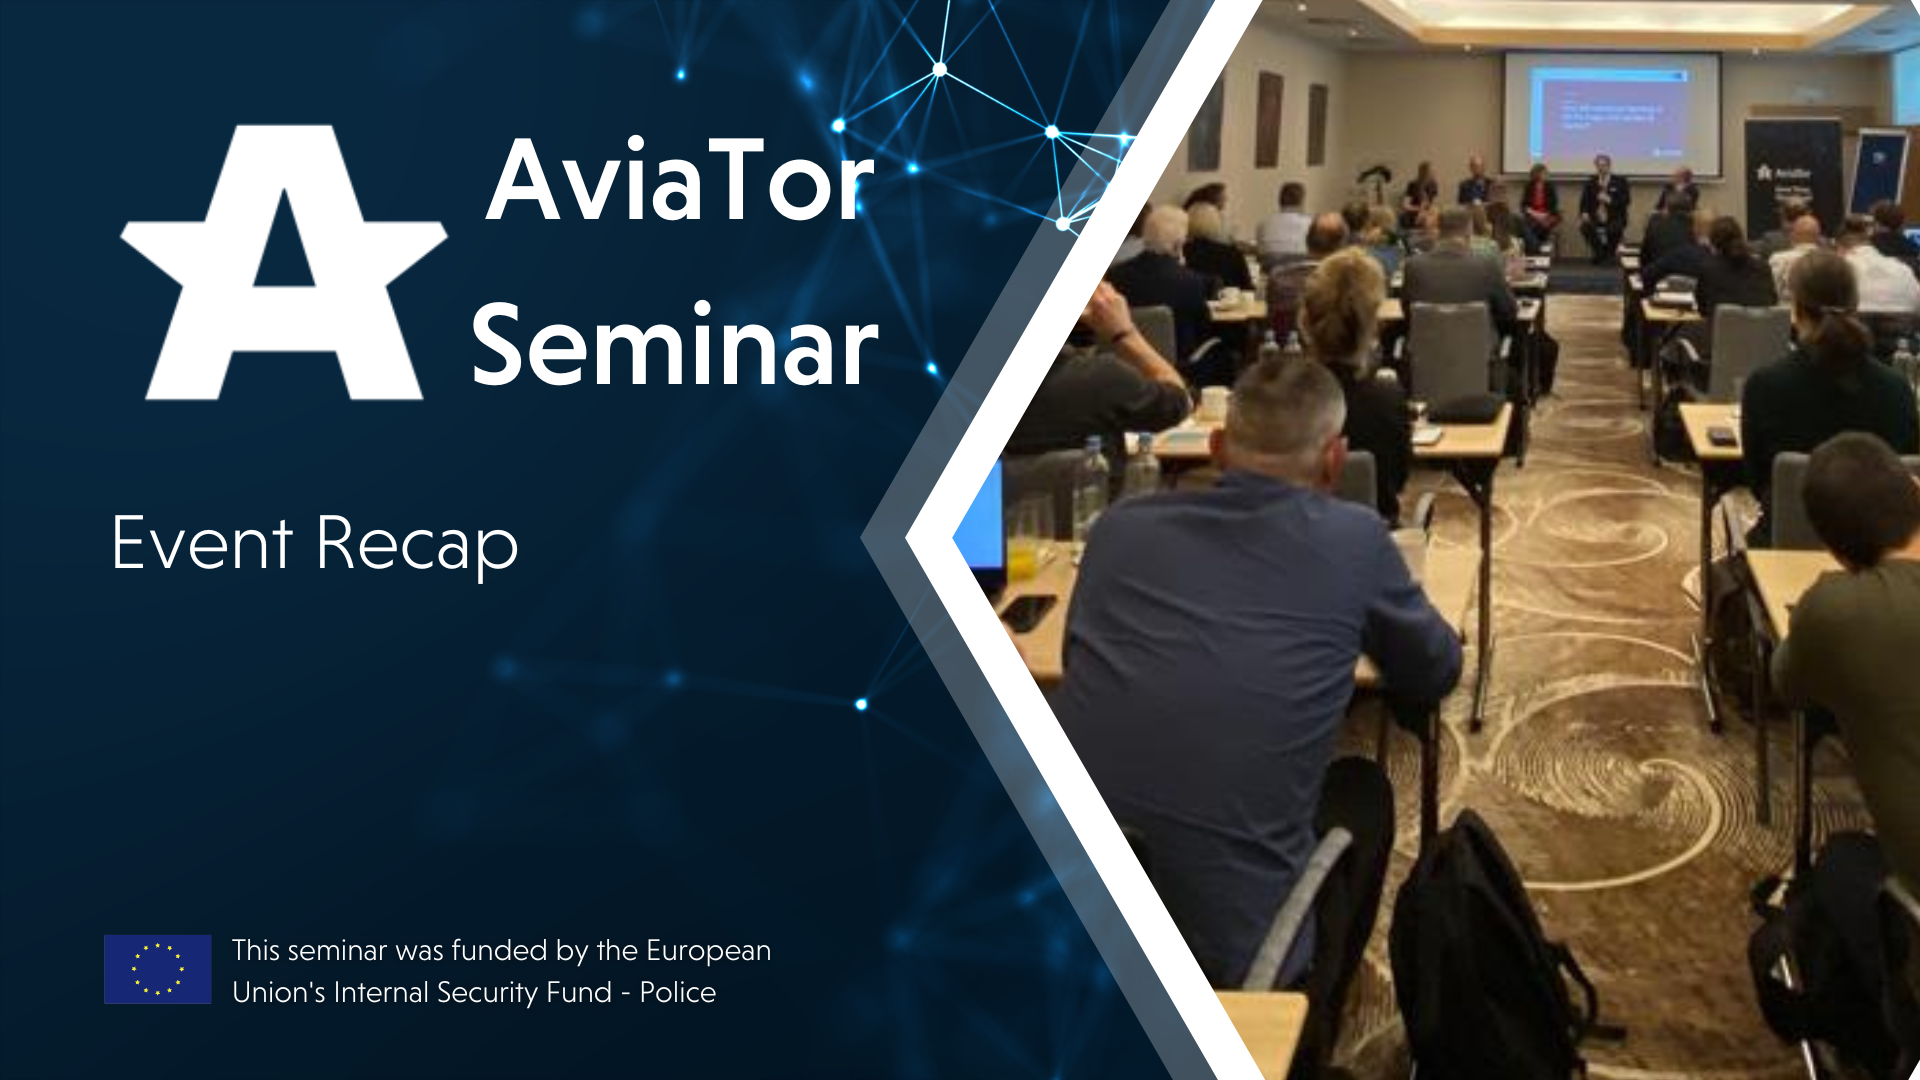 AviaTor Seminar Recap